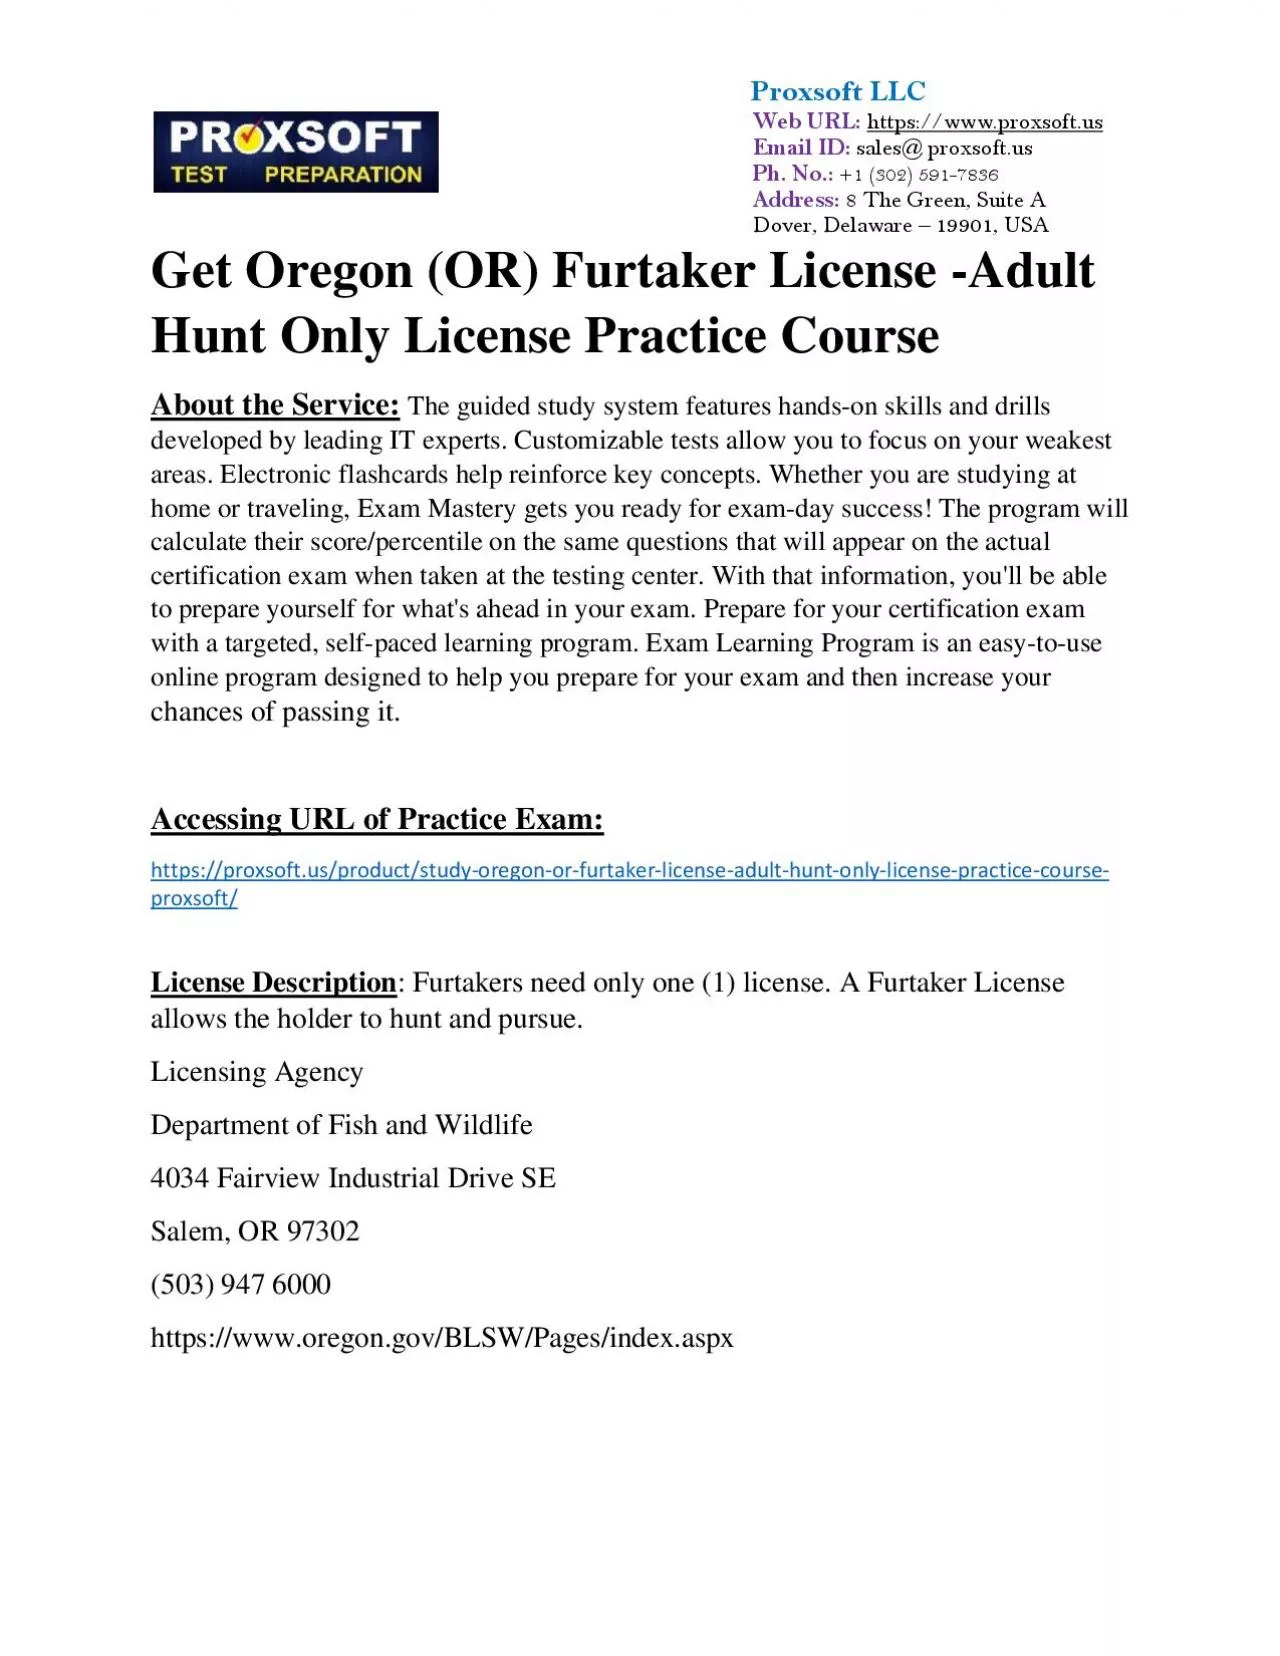 Get Oregon (OR) Furtaker License -Adult Hunt Only License Practice Course